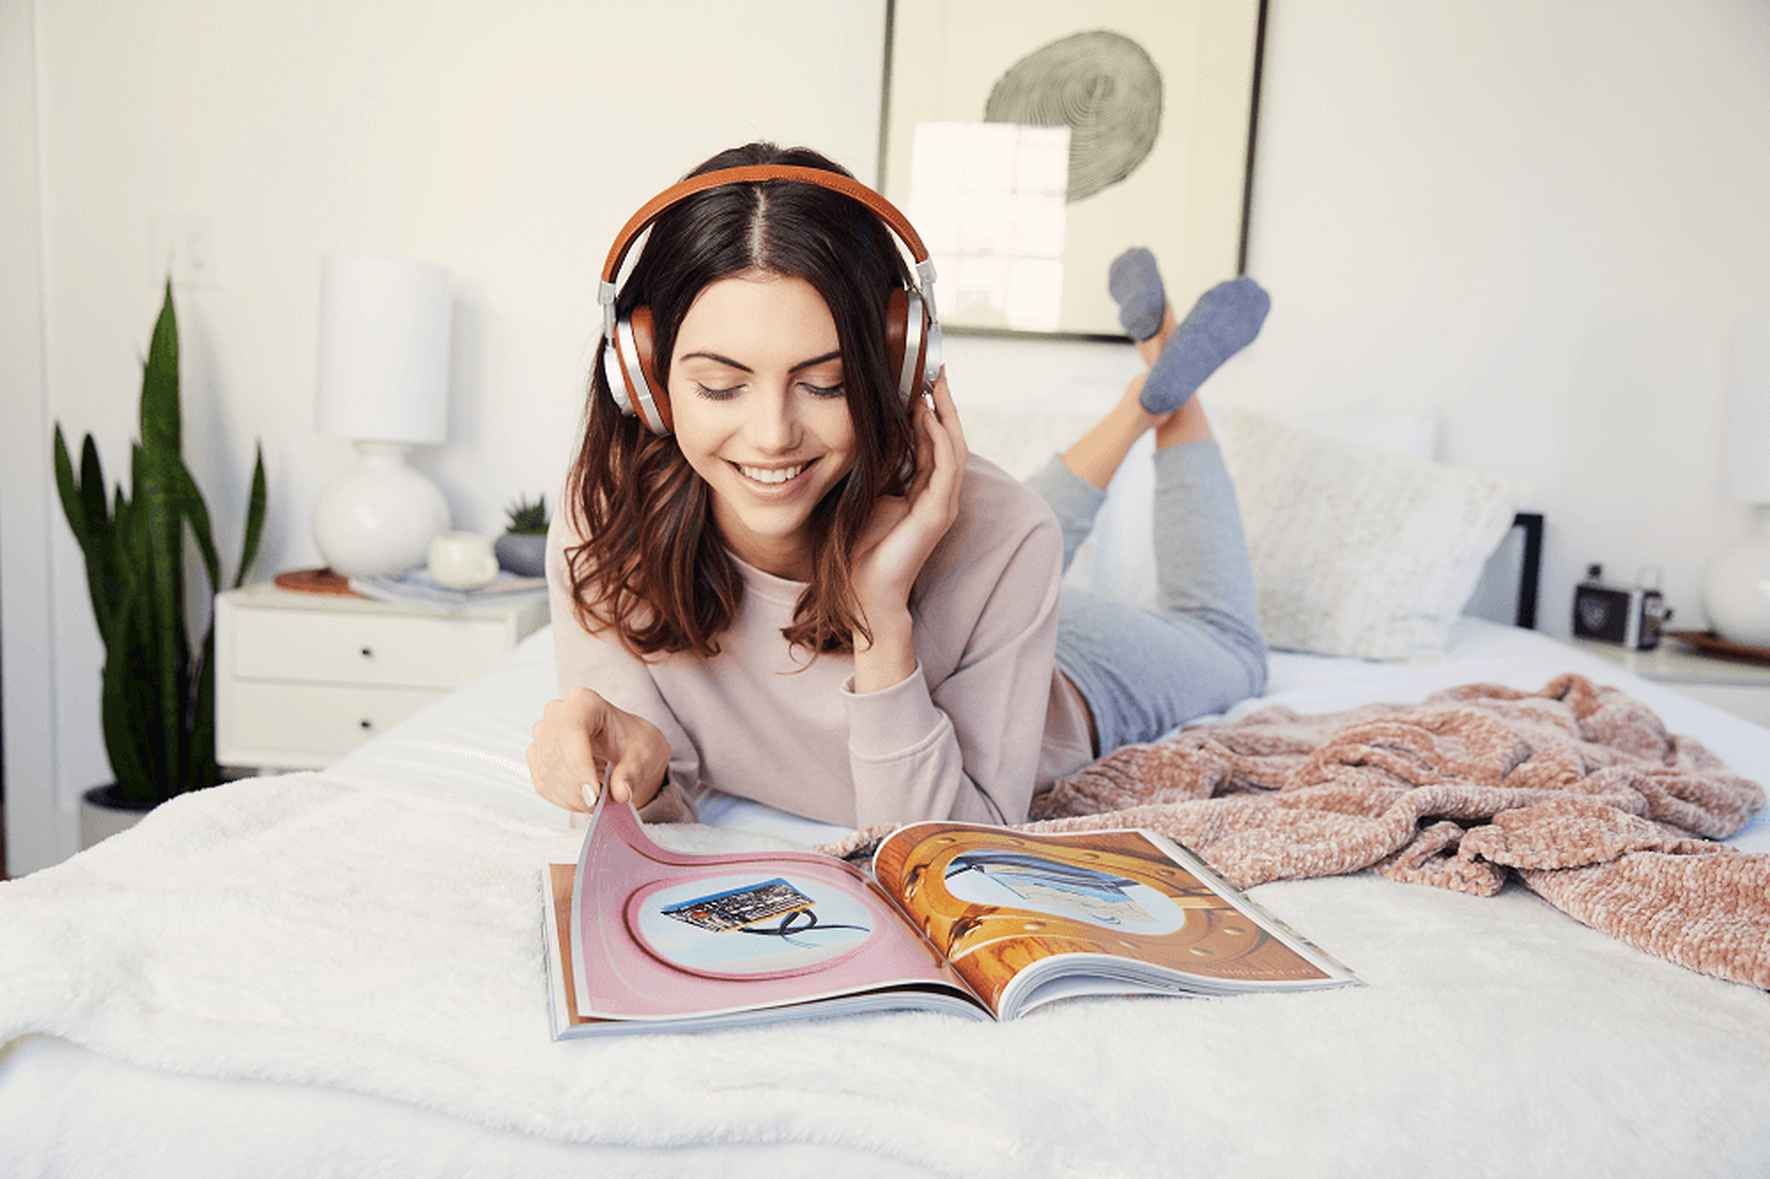 Una mujer con audífonos está en su cama leyendo una revista con el logo de Peds™ en el centro.